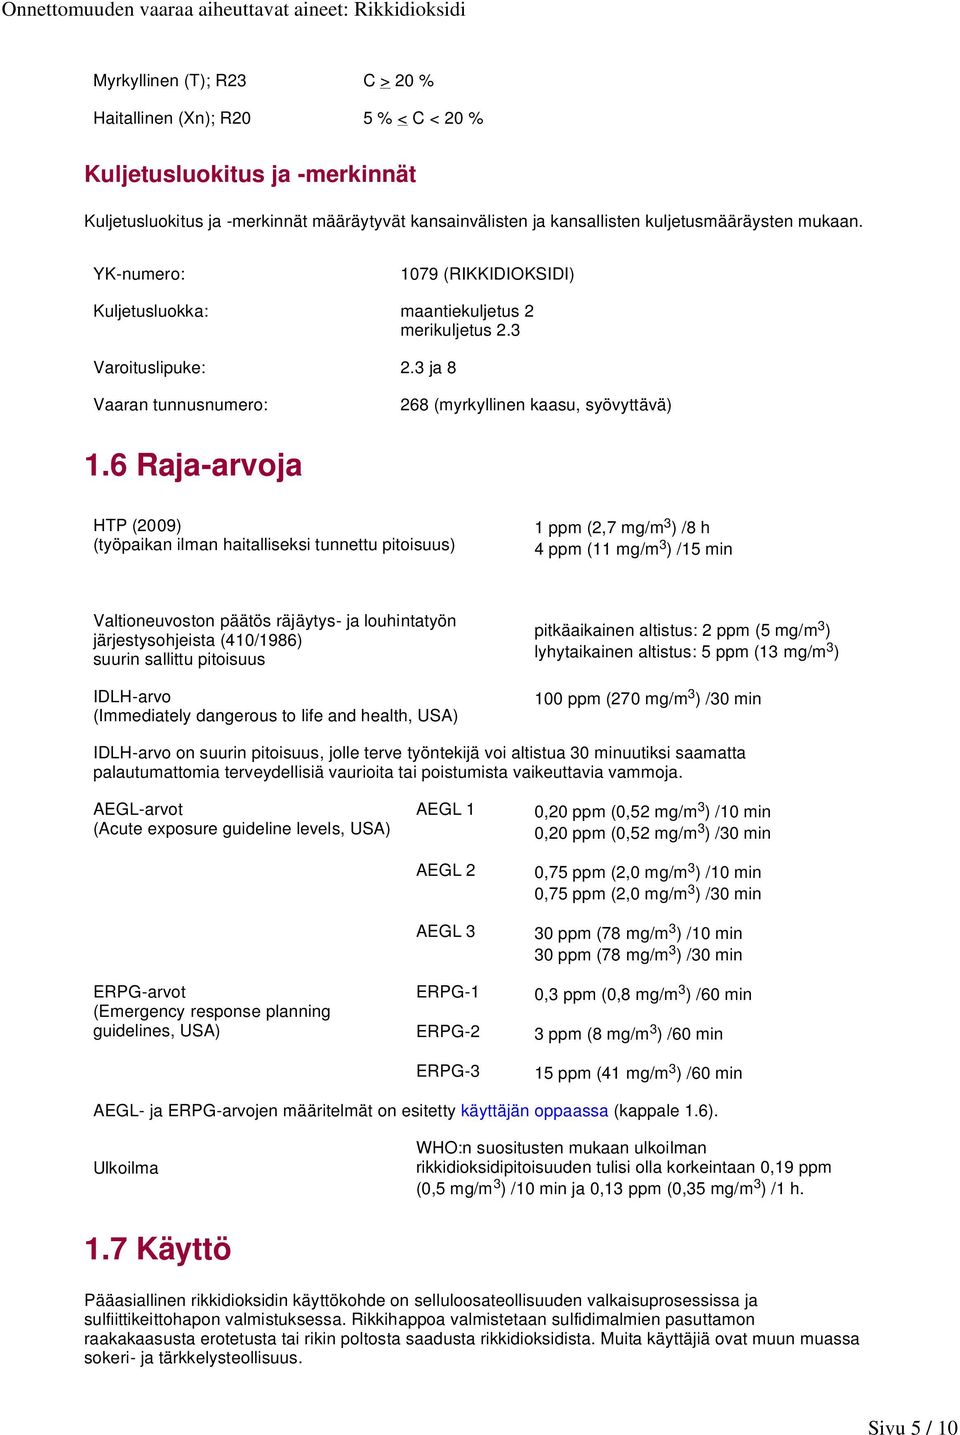 6 Raja-arvoja HTP (2009) (työpaikan ilman haitalliseksi tunnettu pitoisuus) 1 ppm (2,7 mg/m 3 ) /8 h 4 ppm (11 mg/m 3 ) /15 min Valtioneuvoston päätös räjäytys- ja louhintatyön järjestysohjeista